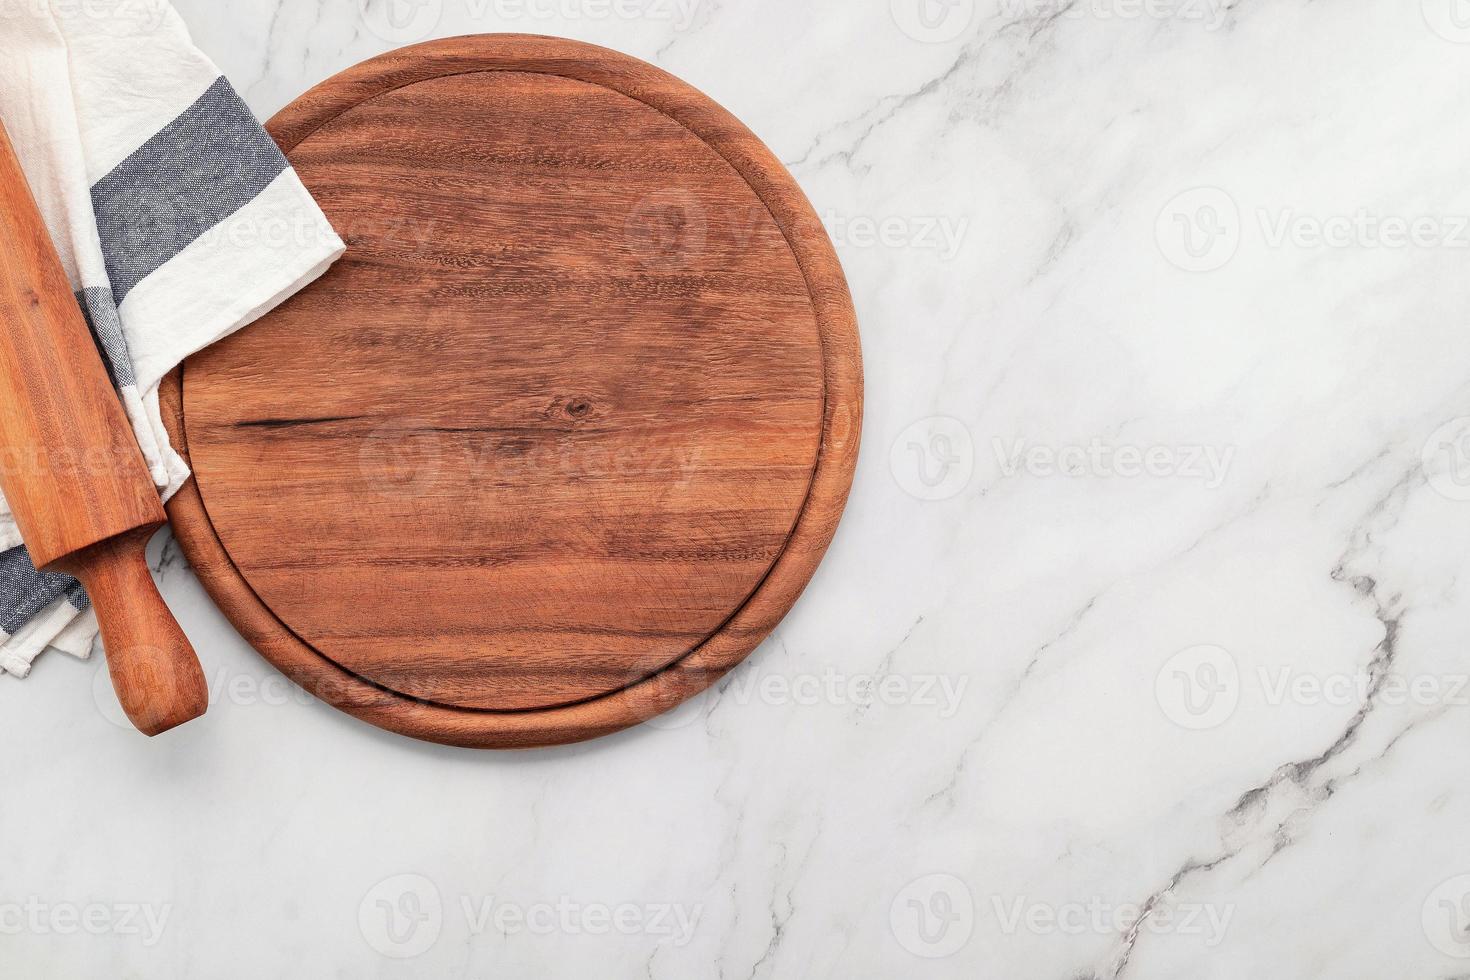 Plato de pizza de madera vacía con servilleta sobre piedra de mármol foto